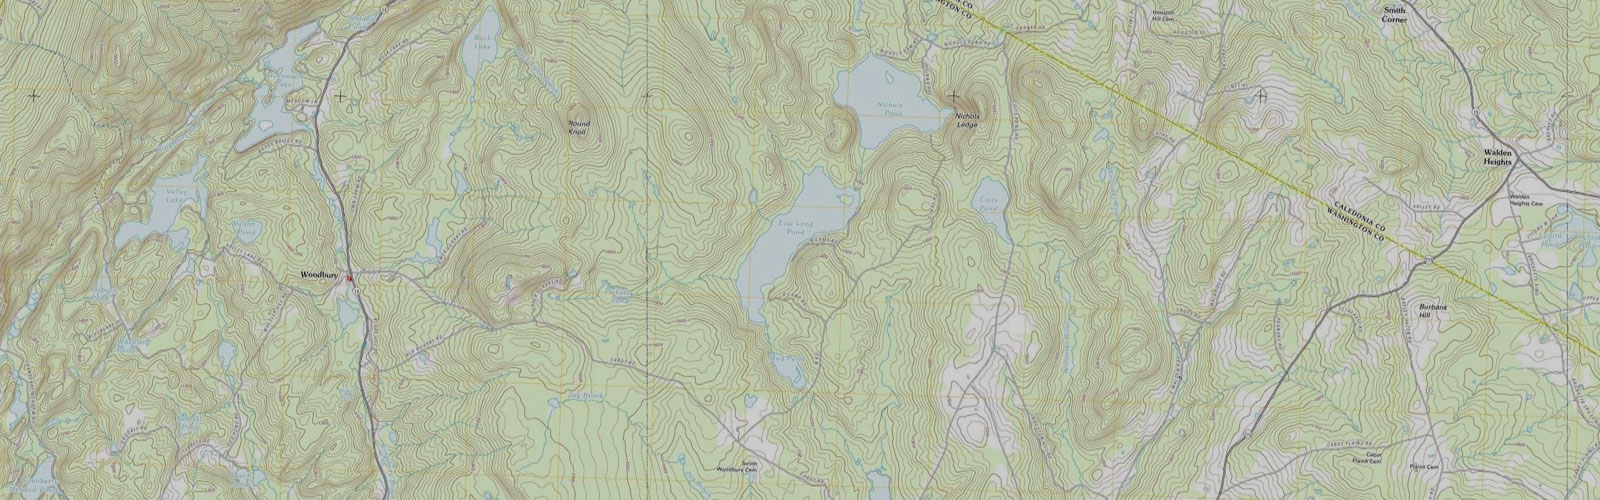 topographic map of woodbury vermont area